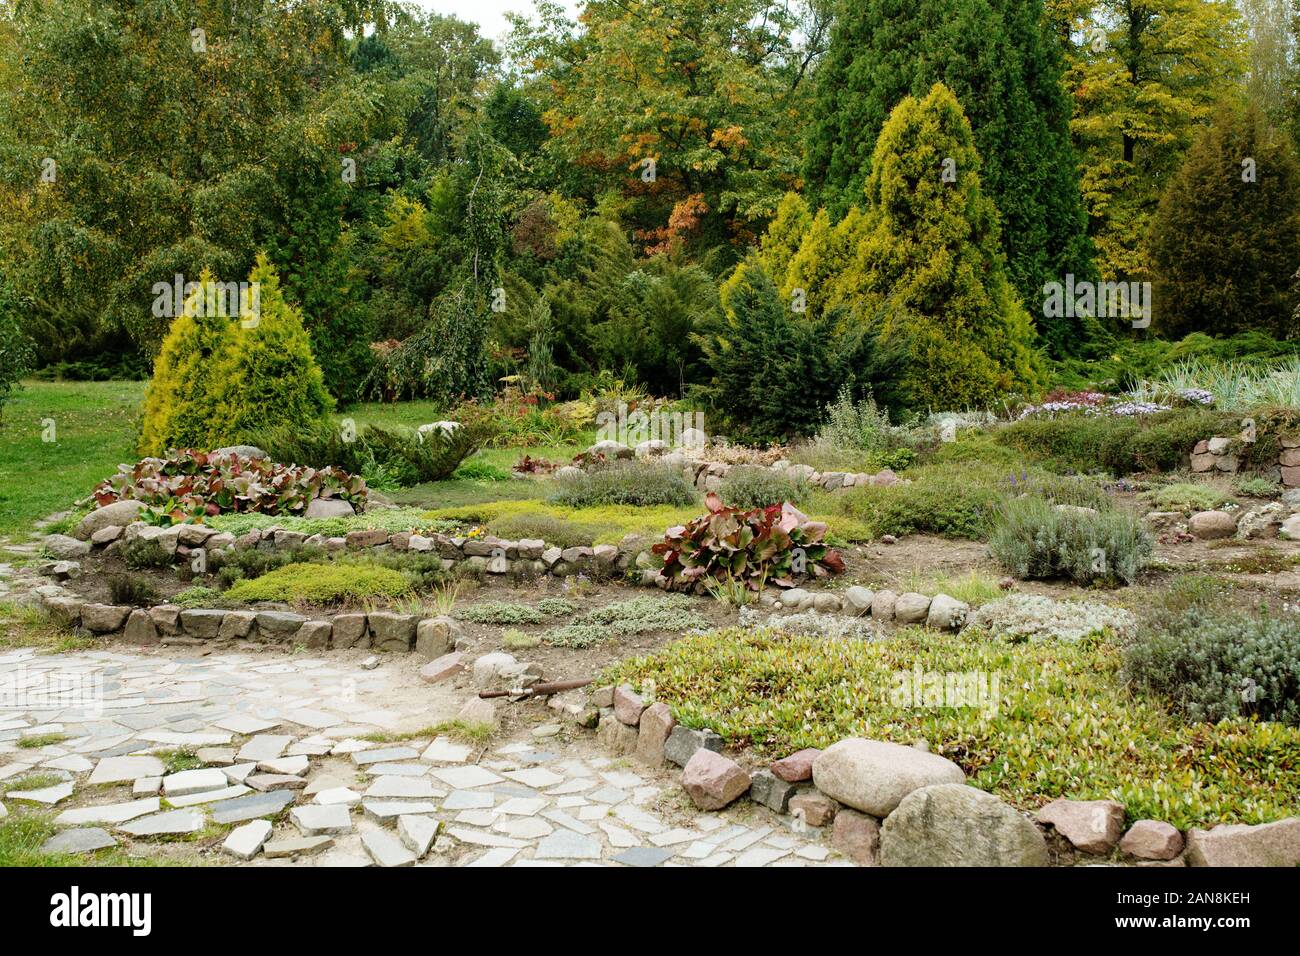 Alpinen botanischen Garten mit Steinen und anderen Pflanzen, Garten- und Landschaftsbau design Stockfoto